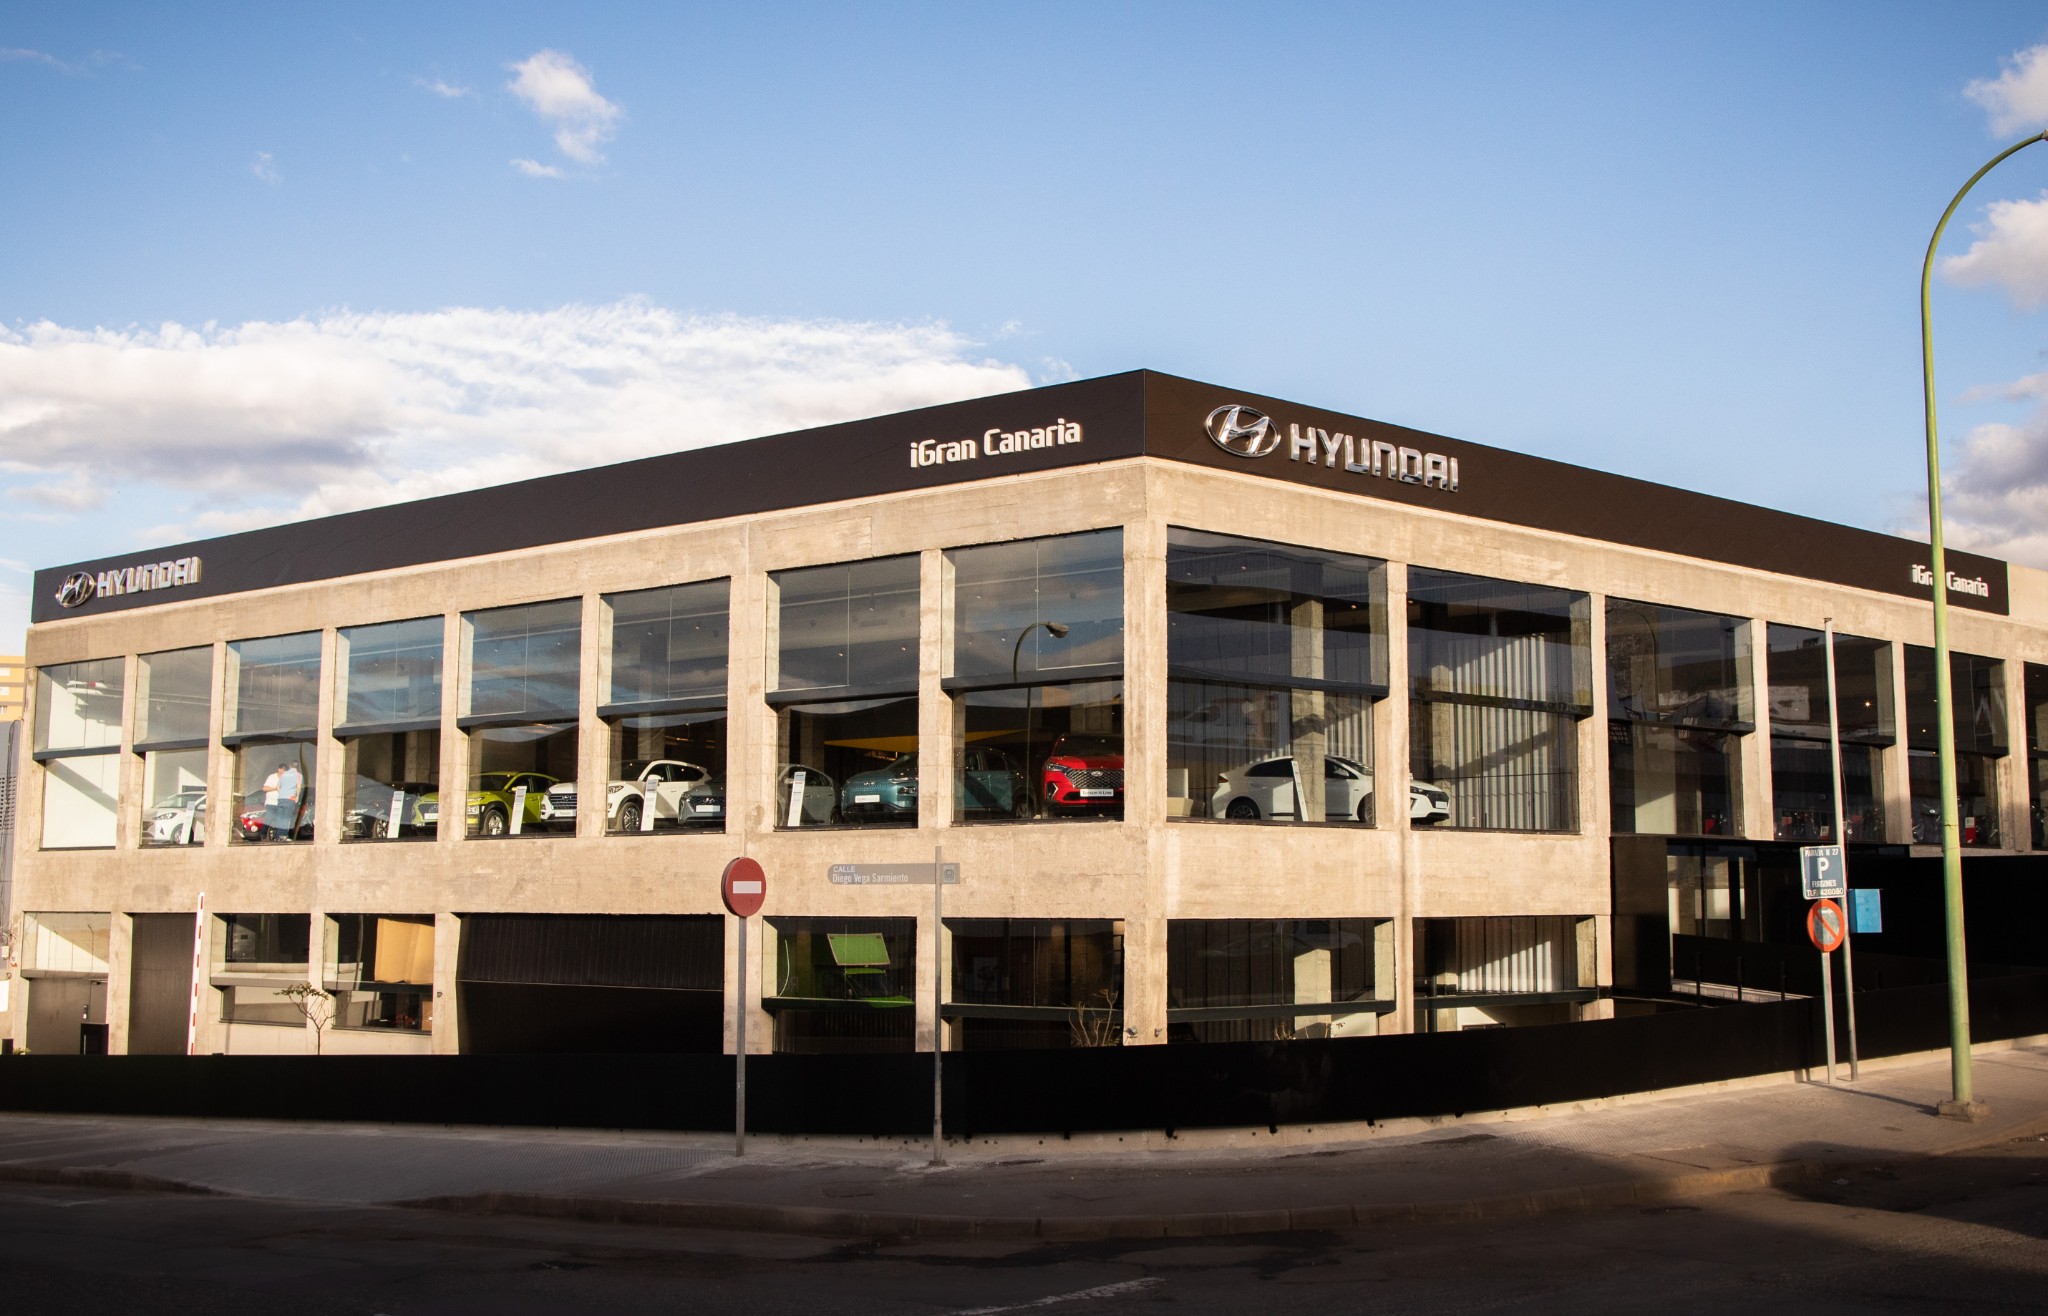 Die Domingo Alonso Group eröffnet ihr neues Autohaus in der Hauptstadt Gran Canaria mit mehr als 4.000 Quadratmetern Ausstellungsfläche und offiziellem Service. Ein monumentales Projekt mit dem innovativsten, modernsten und technologischsten Gebäude der Branche, um seinen Kunden ein 360 °-Erlebnis zu bieten, ein Pionier auf den Inseln. In den neuen Einrichtungen befinden sich die Marken Hyundai, Honda mit seinen beiden Geschäftsbereichen Automobile und Motorräder sowie Carplus, das neue Gebrauchtwagenunternehmen der Gruppe.